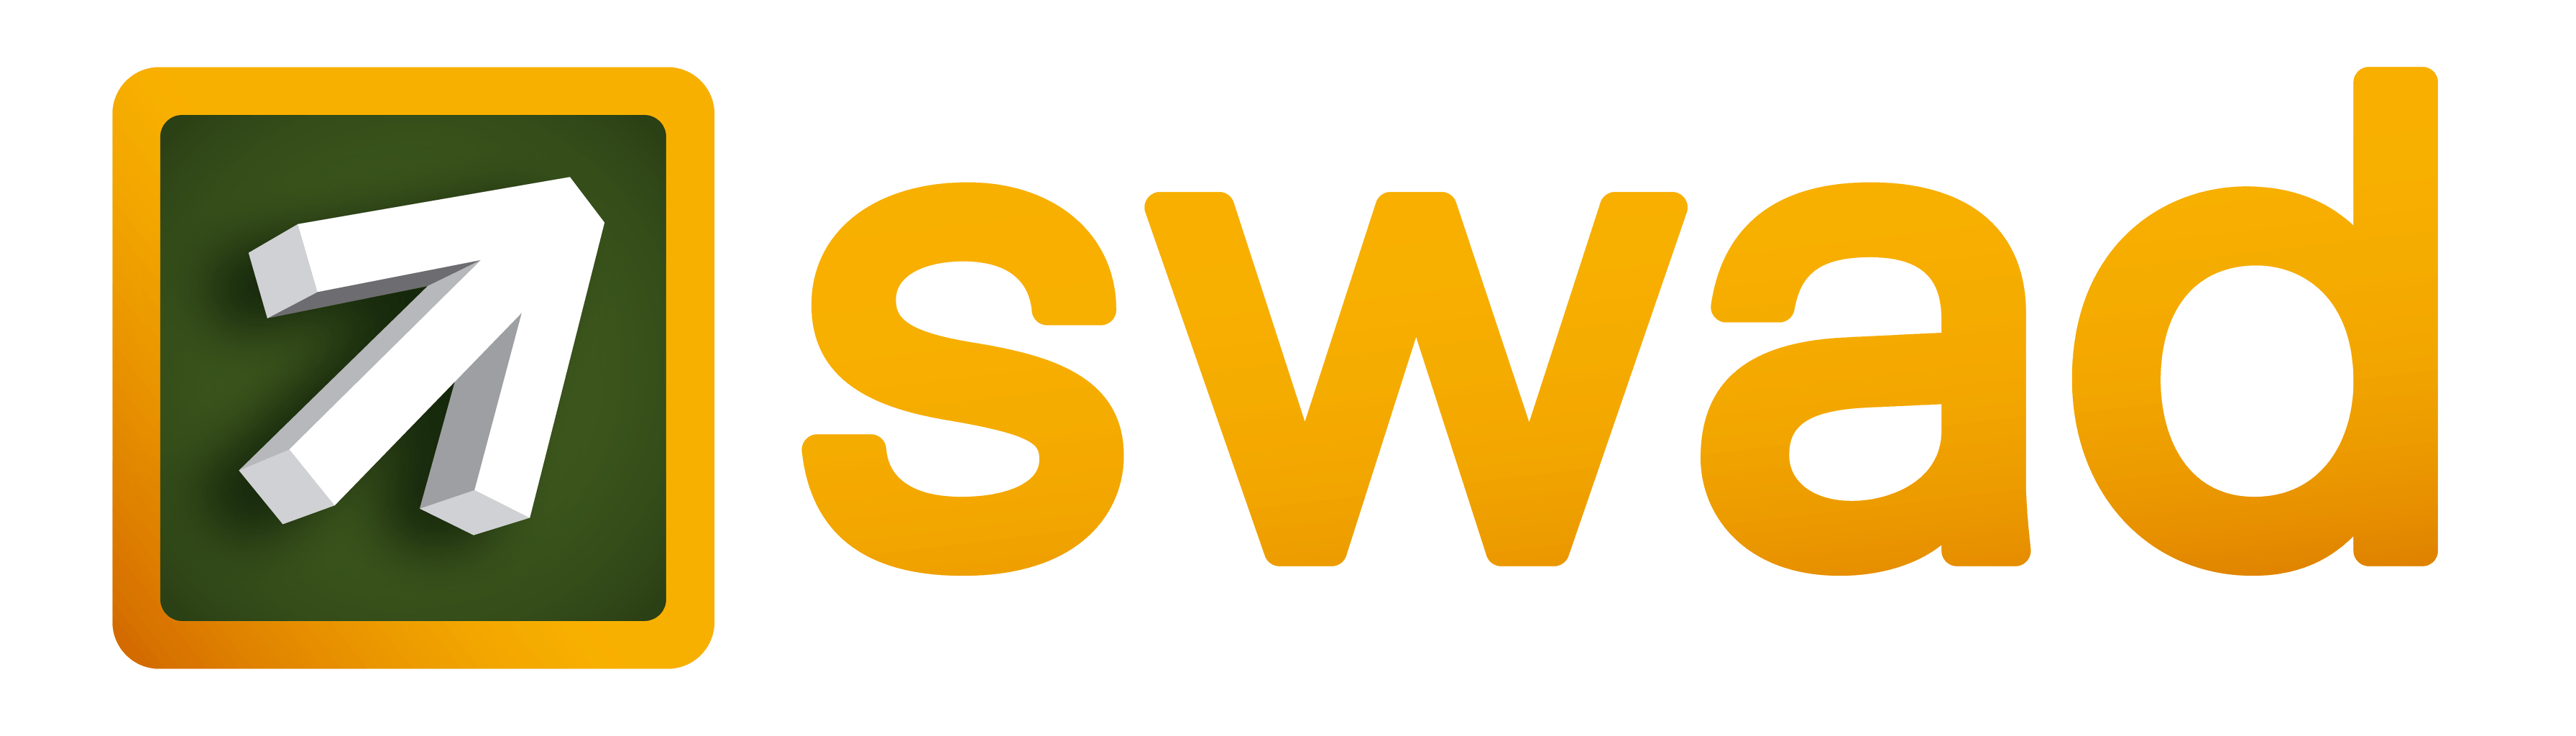 Swad Logo - SWAD: Logos